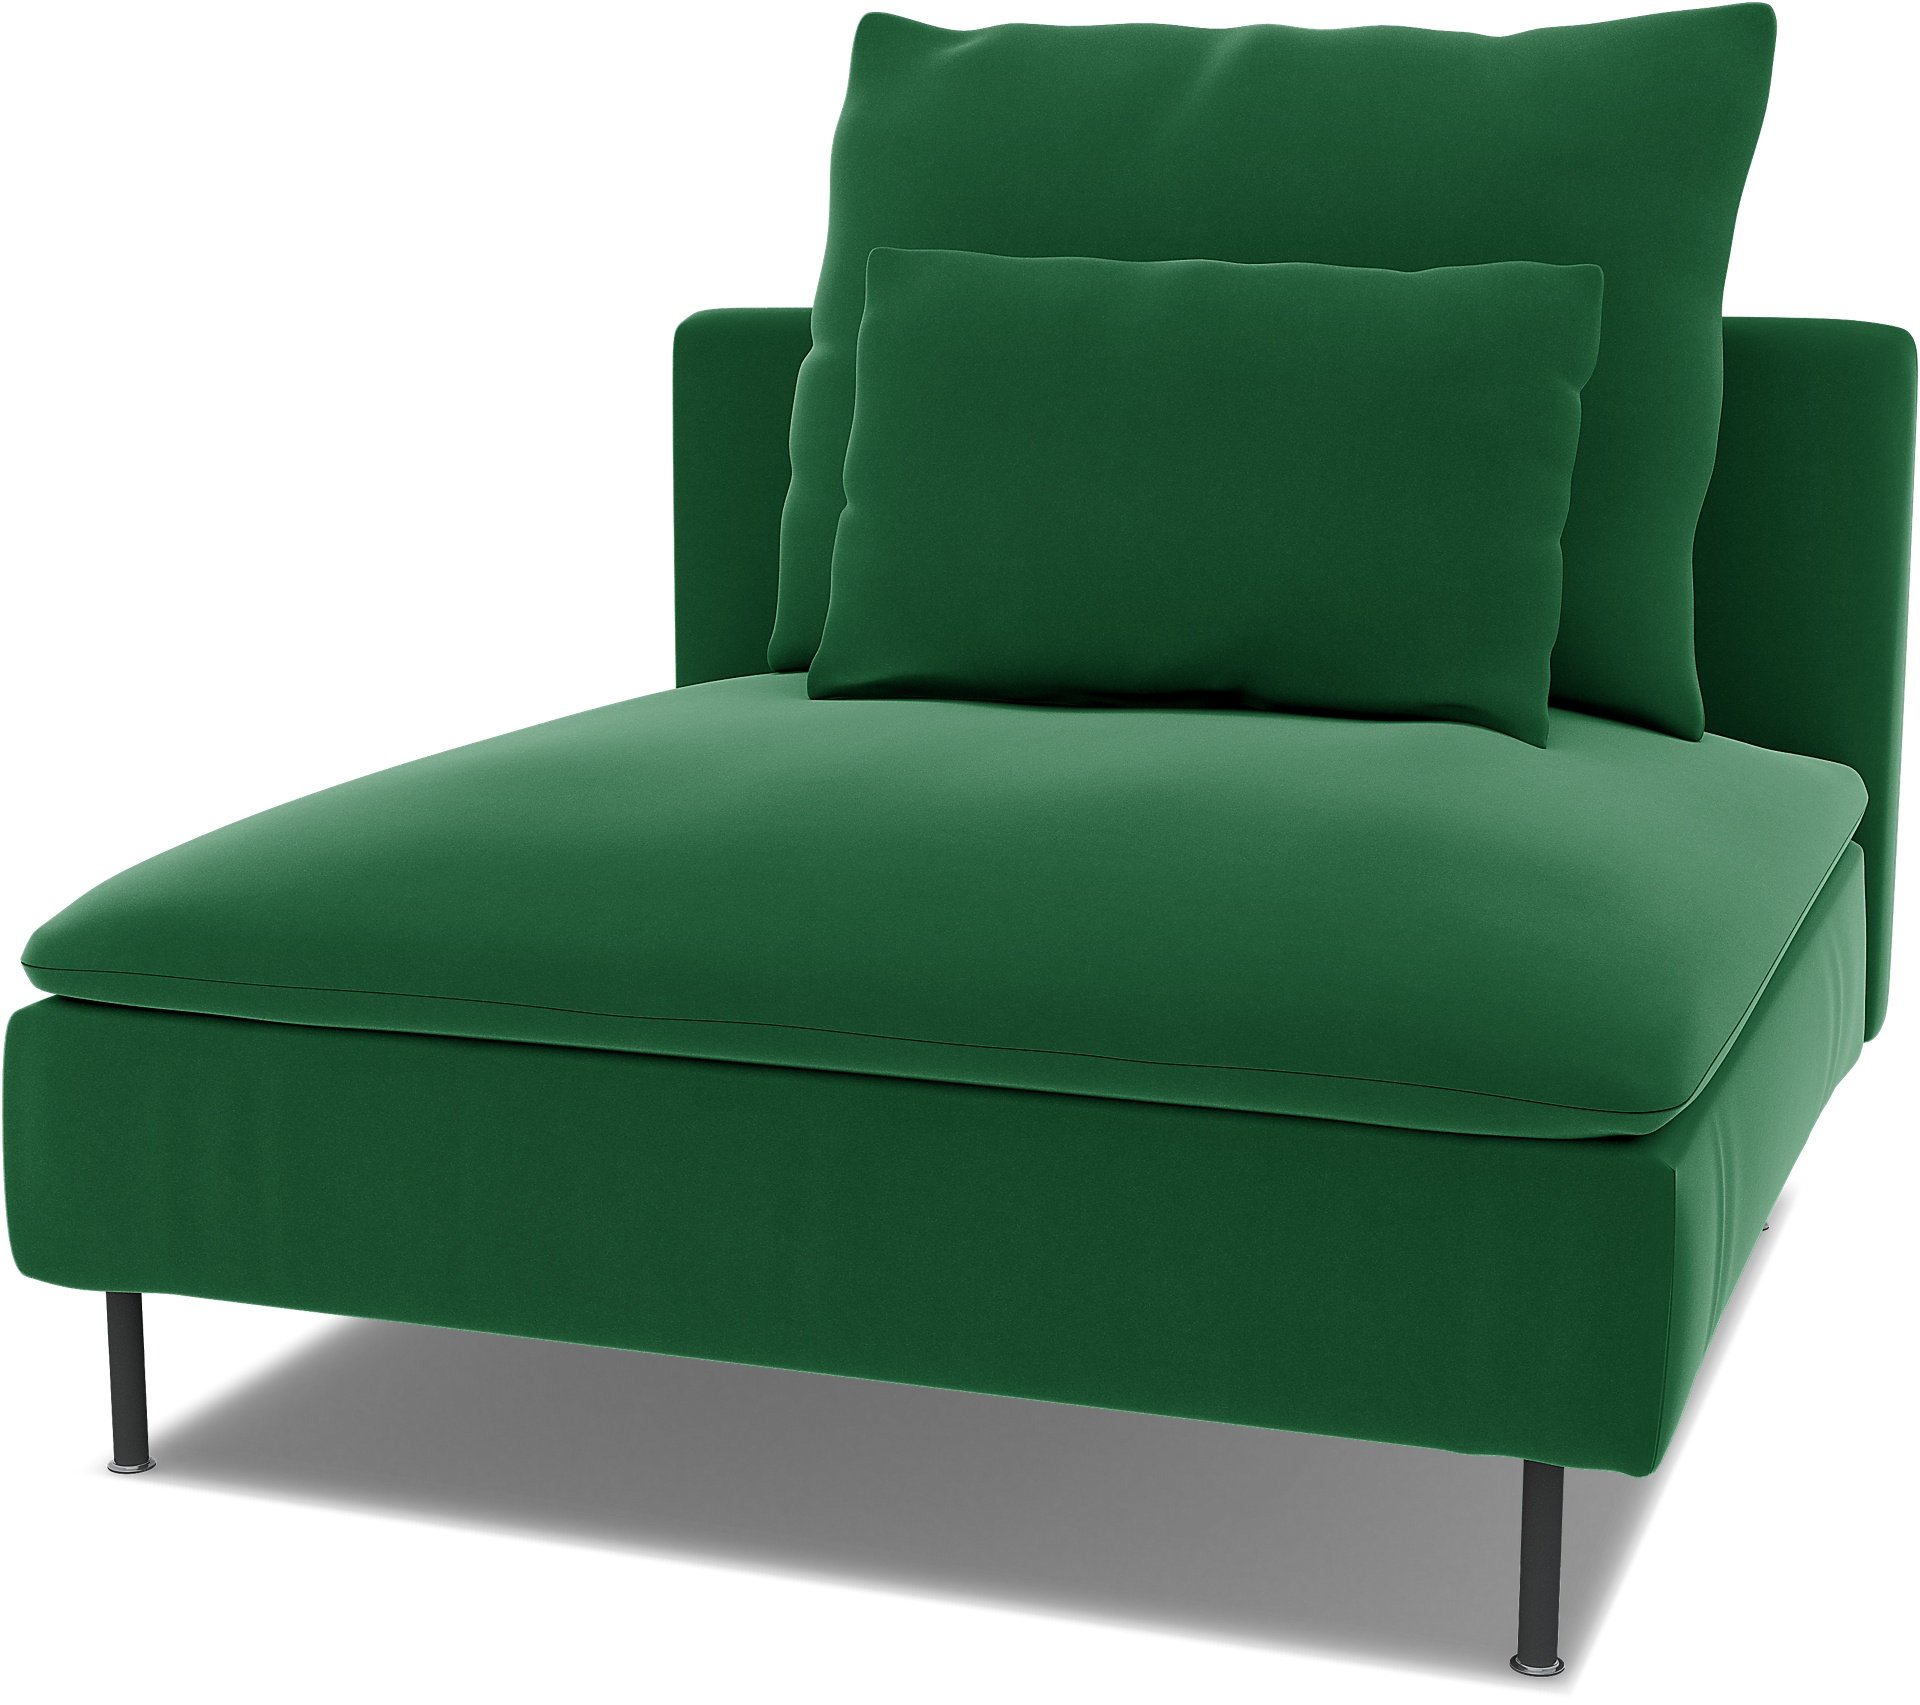 Spare seat cushion cover for SODERHAMN 1 SEAT SECTION , Abundant Green, Velvet - Bemz